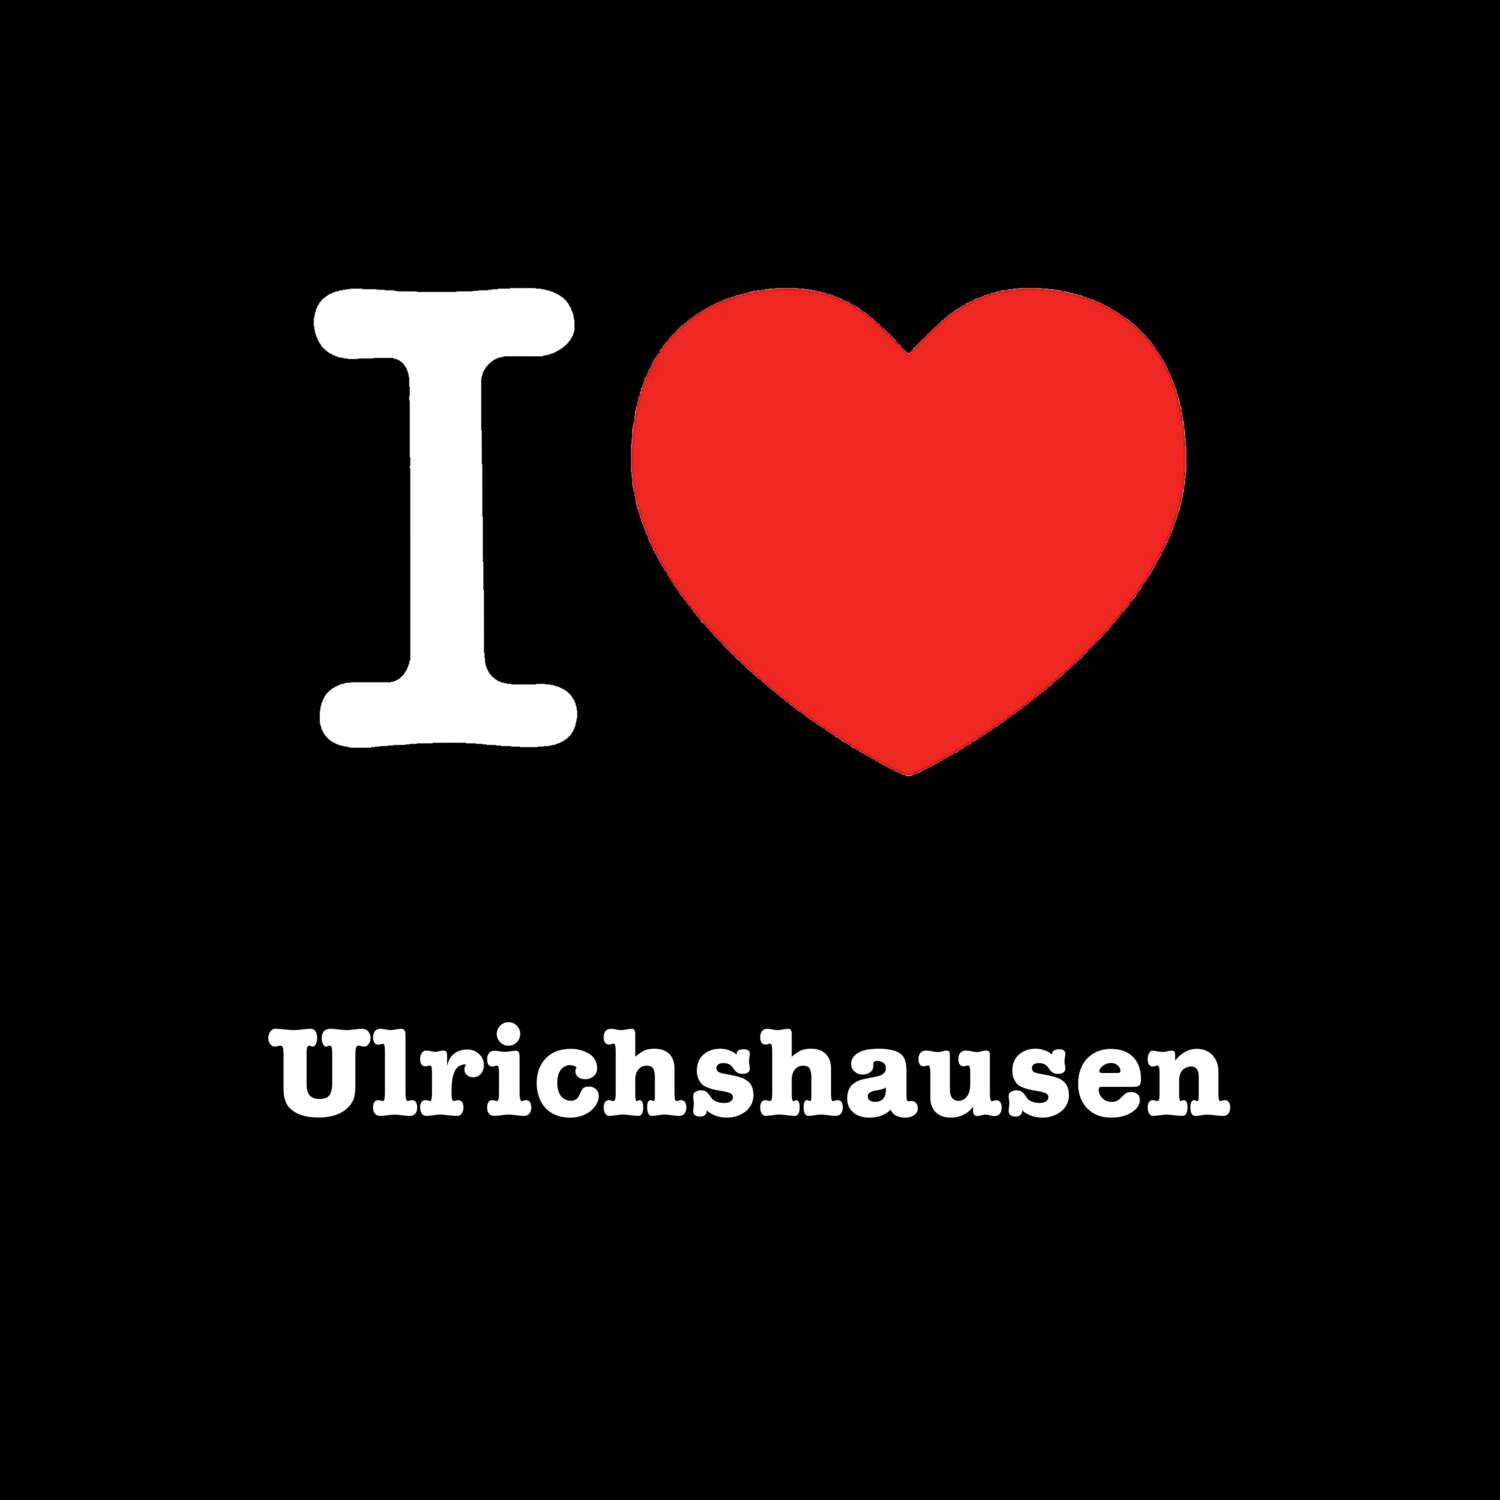 Ulrichshausen T-Shirt »I love«